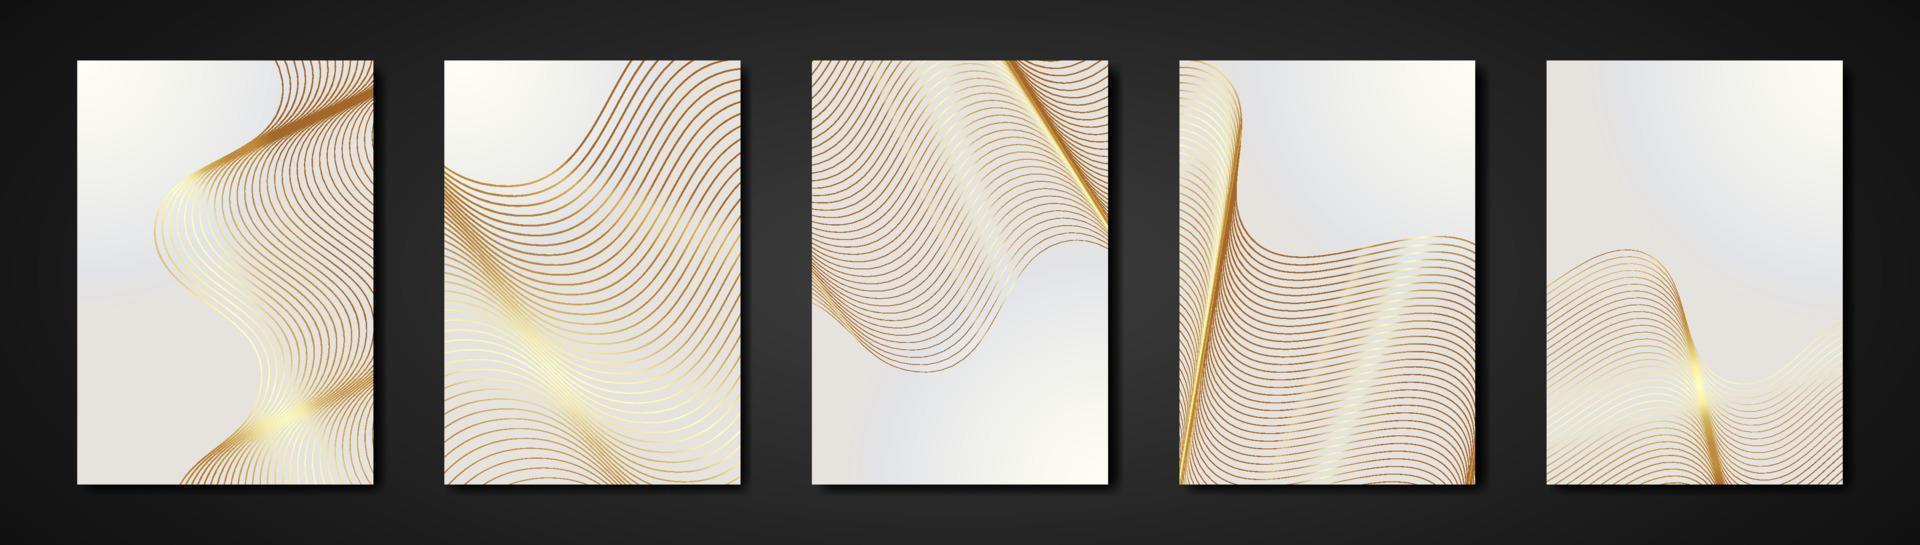 définir des cartes blanches gravure abstraite texture dorée. fond de gravure ondulée. invitation de luxe ou modèle de conception de couverture, rayures dorées ondulées et espace de copie. illustration vectorielle vecteur